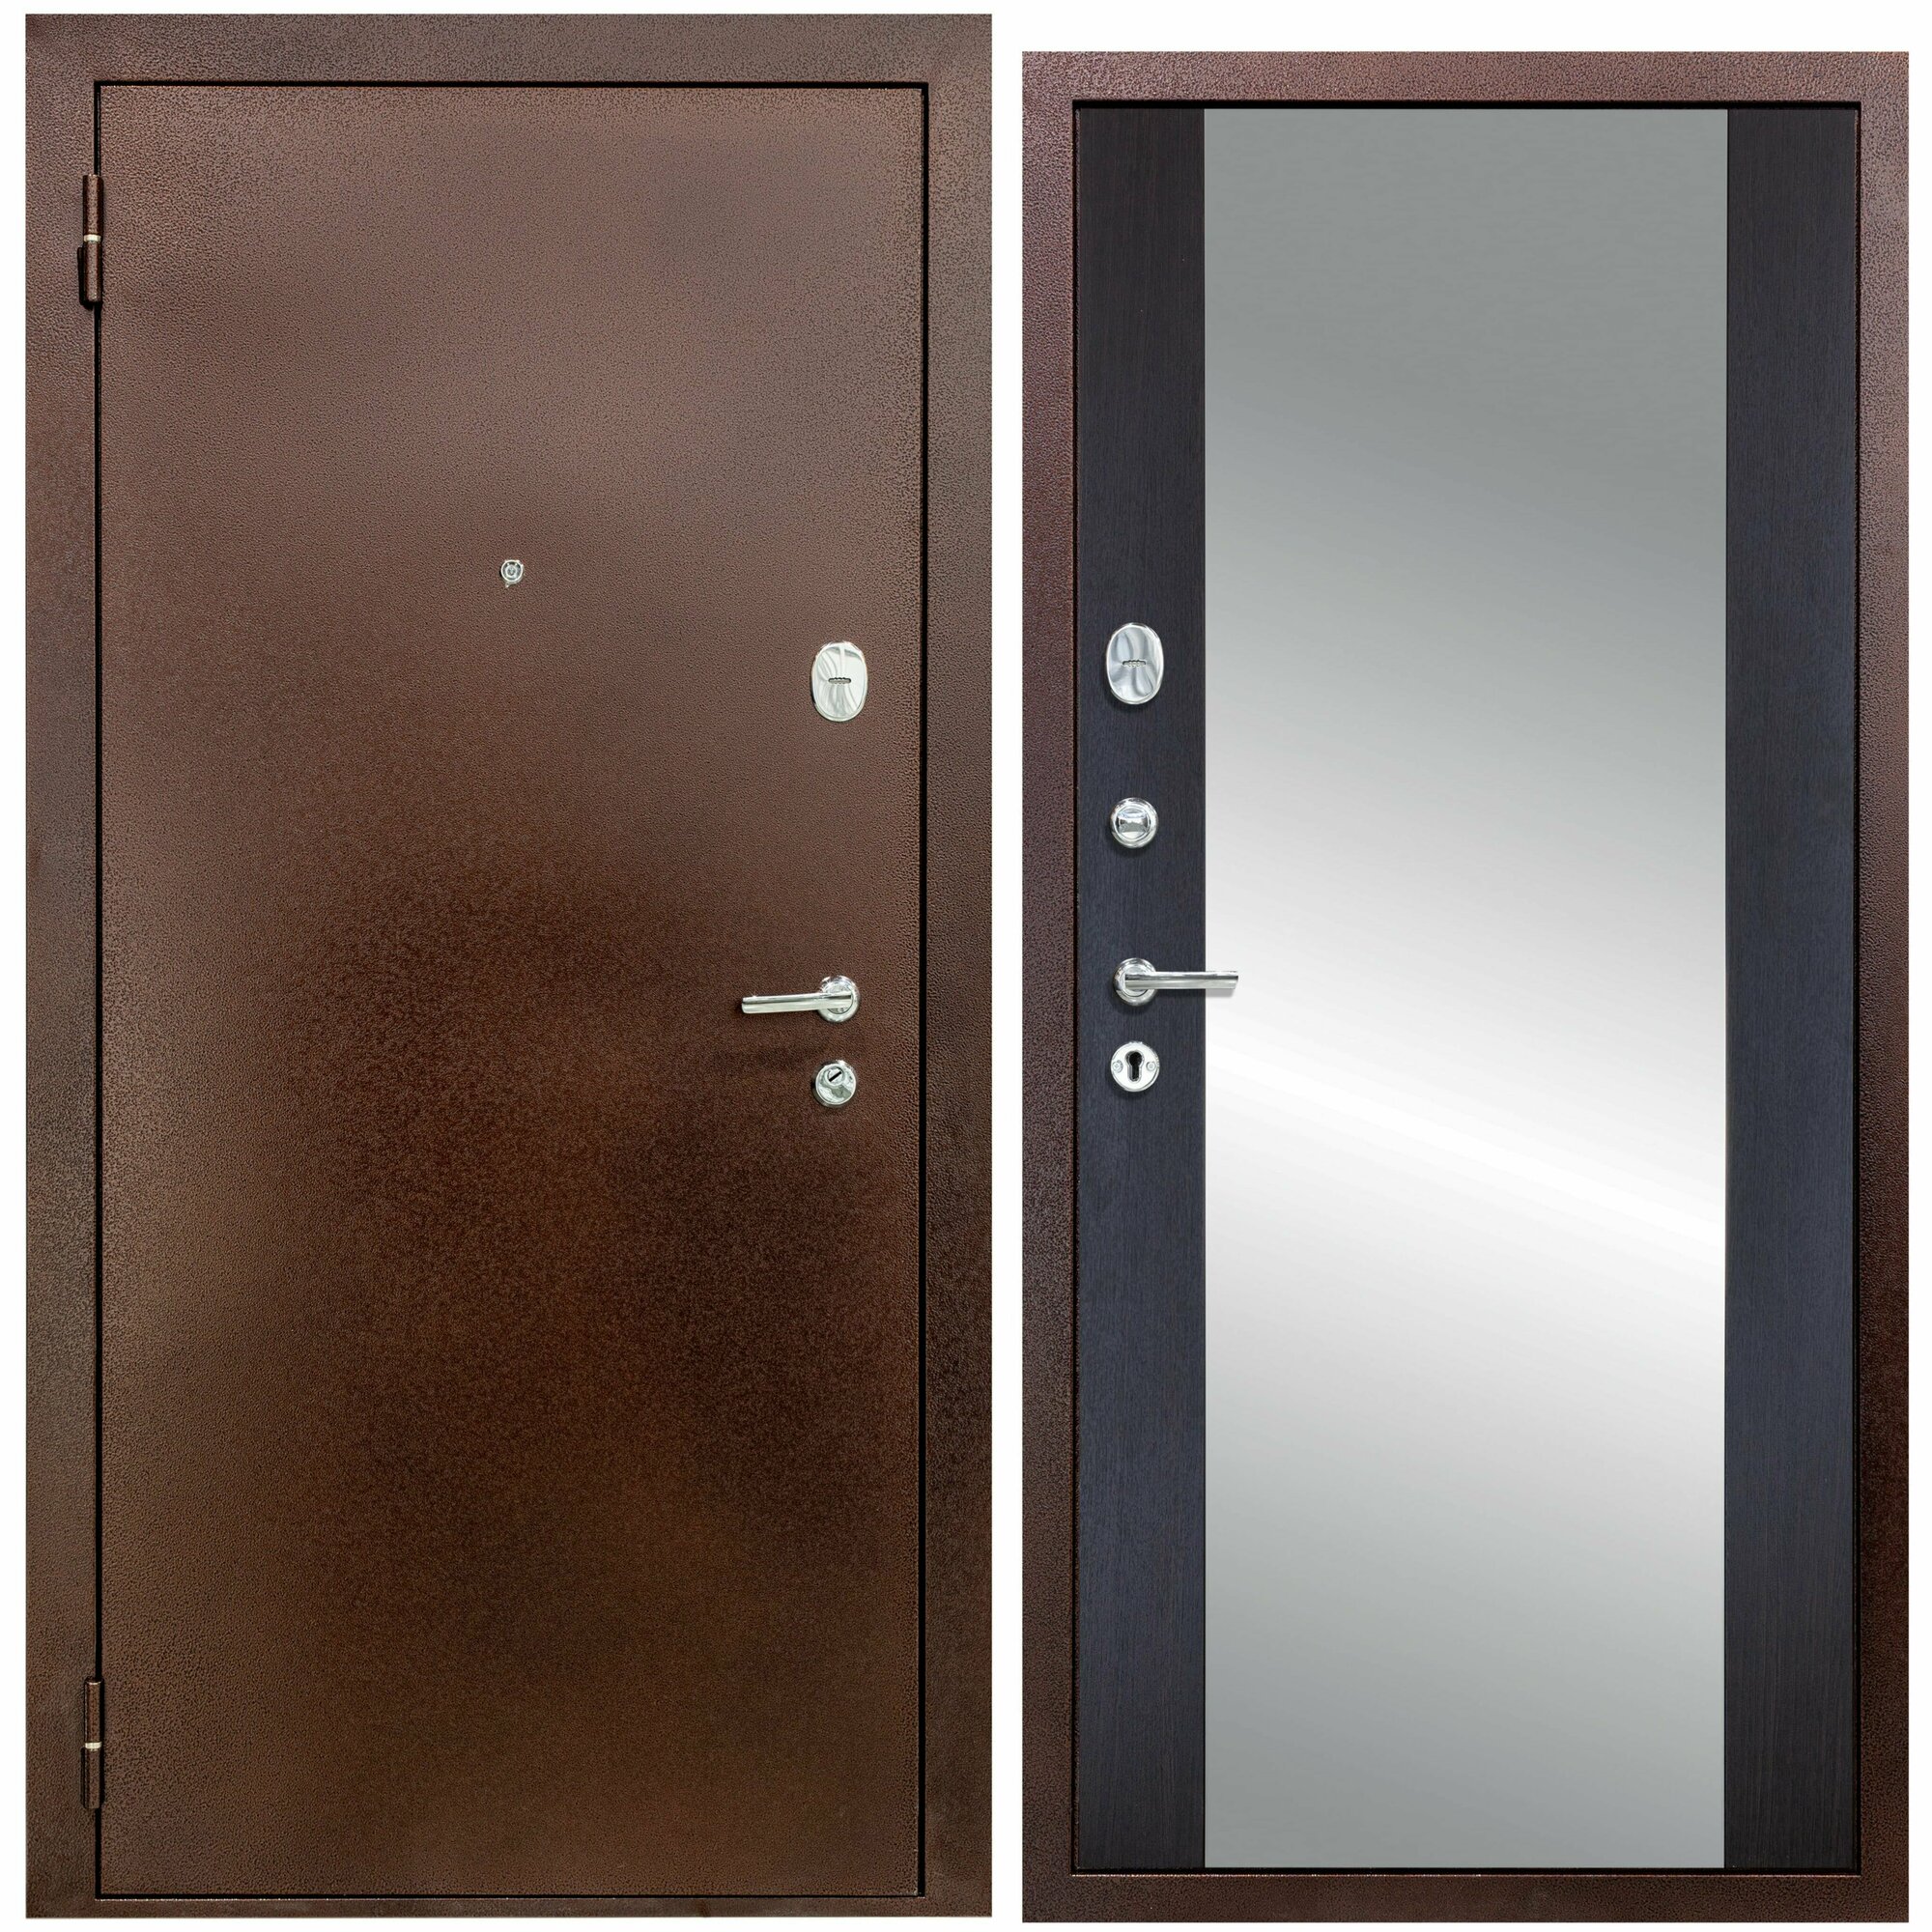 Дверь входная металлическая DIVA 510 Зеркало 2050х960 Левая Антик медь - Д15 Венге, тепло-шумоизоляция, антикоррозийная защита для квартиры и дома